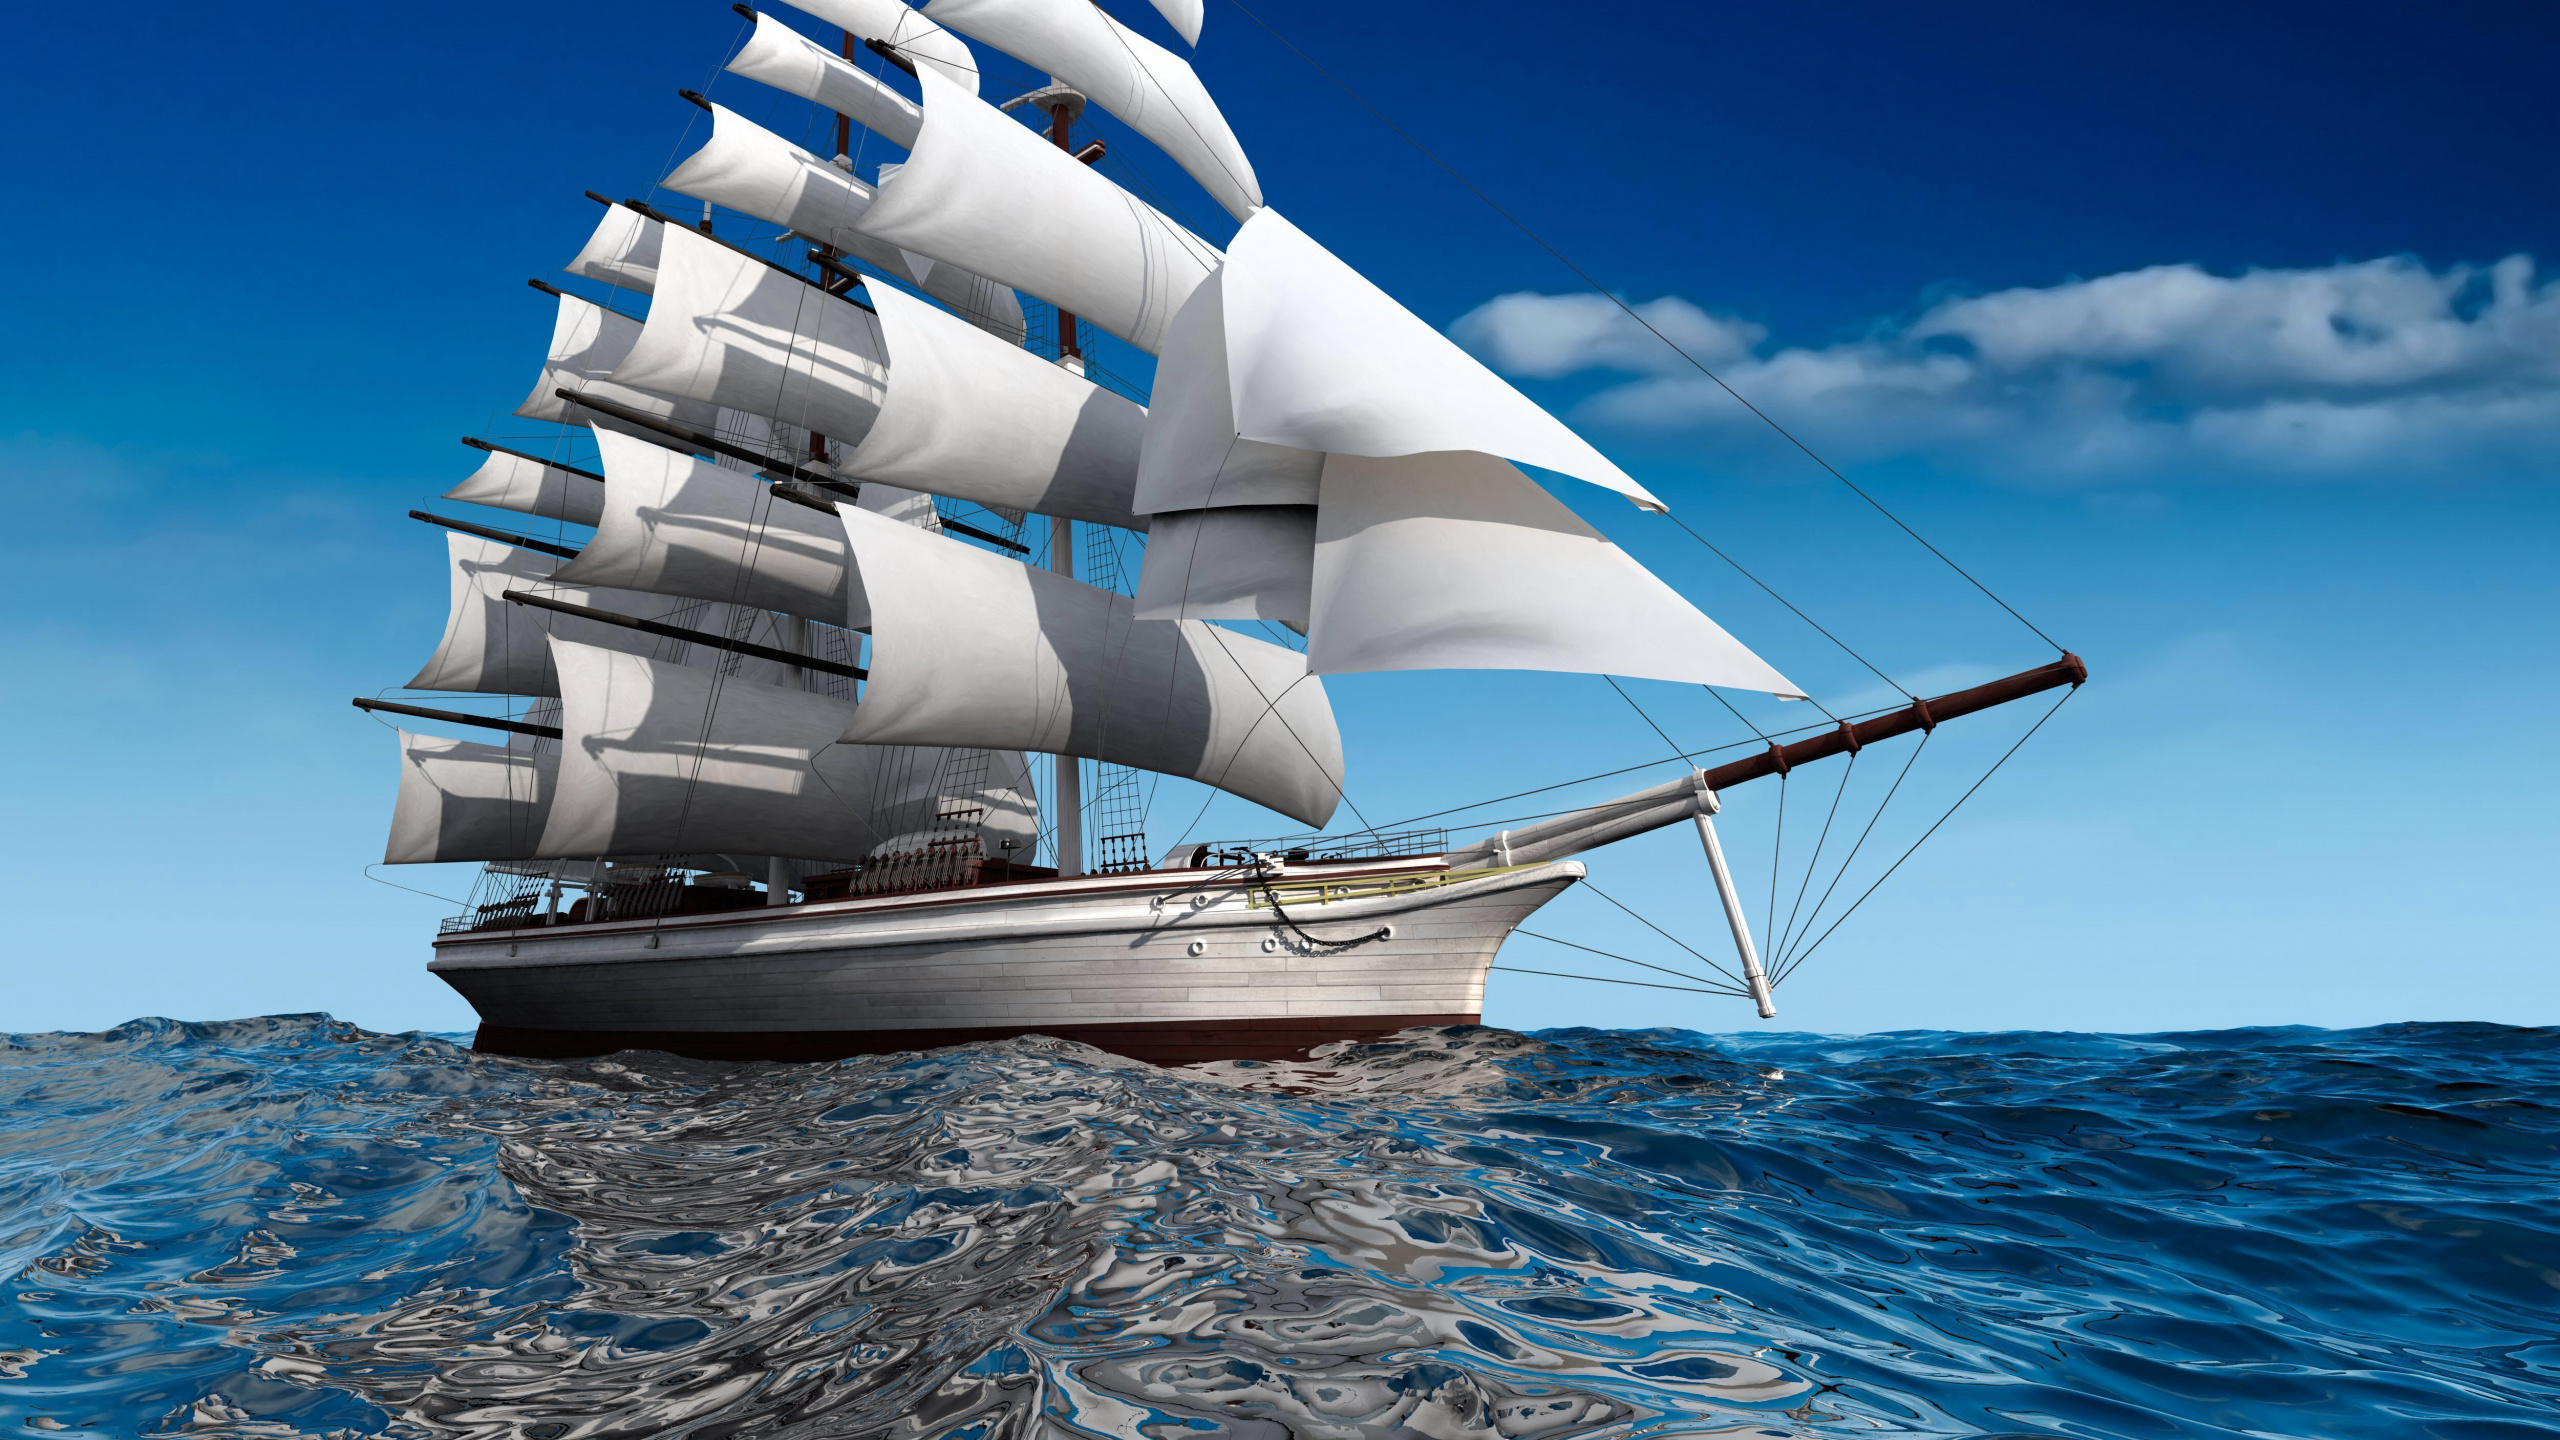 船只, 扬帆, 水运, 高船, 布里格 壁纸 2560x1440 允许